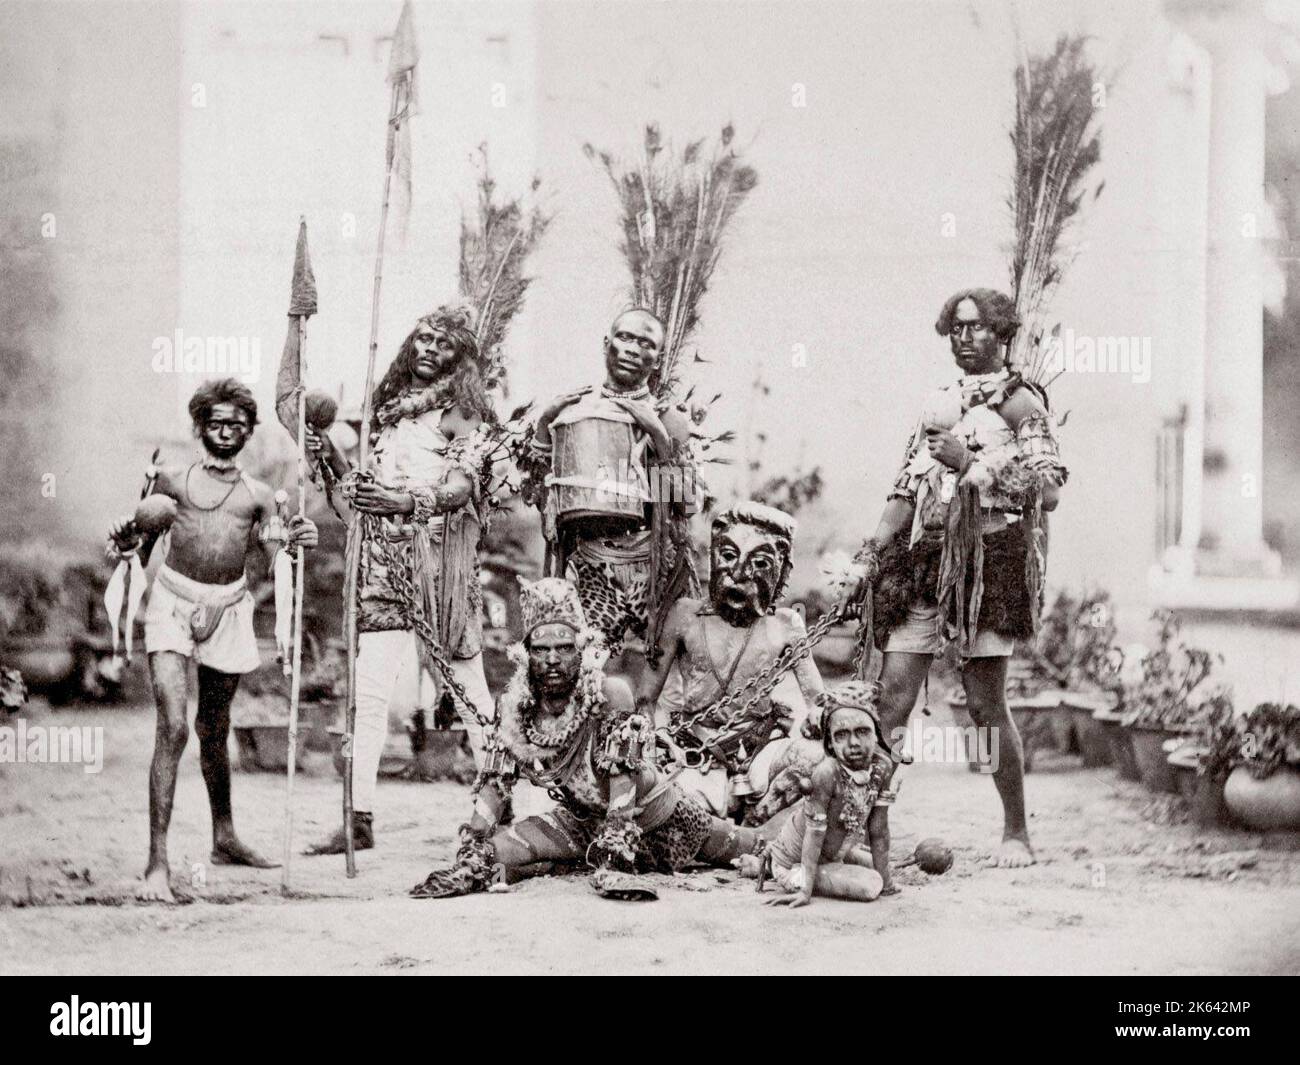 C.1890s - les danseurs en costume tribal avec des tambours et des lances, mais emplacement non identifiés à partir d'une série d'images de l'Inde. Banque D'Images